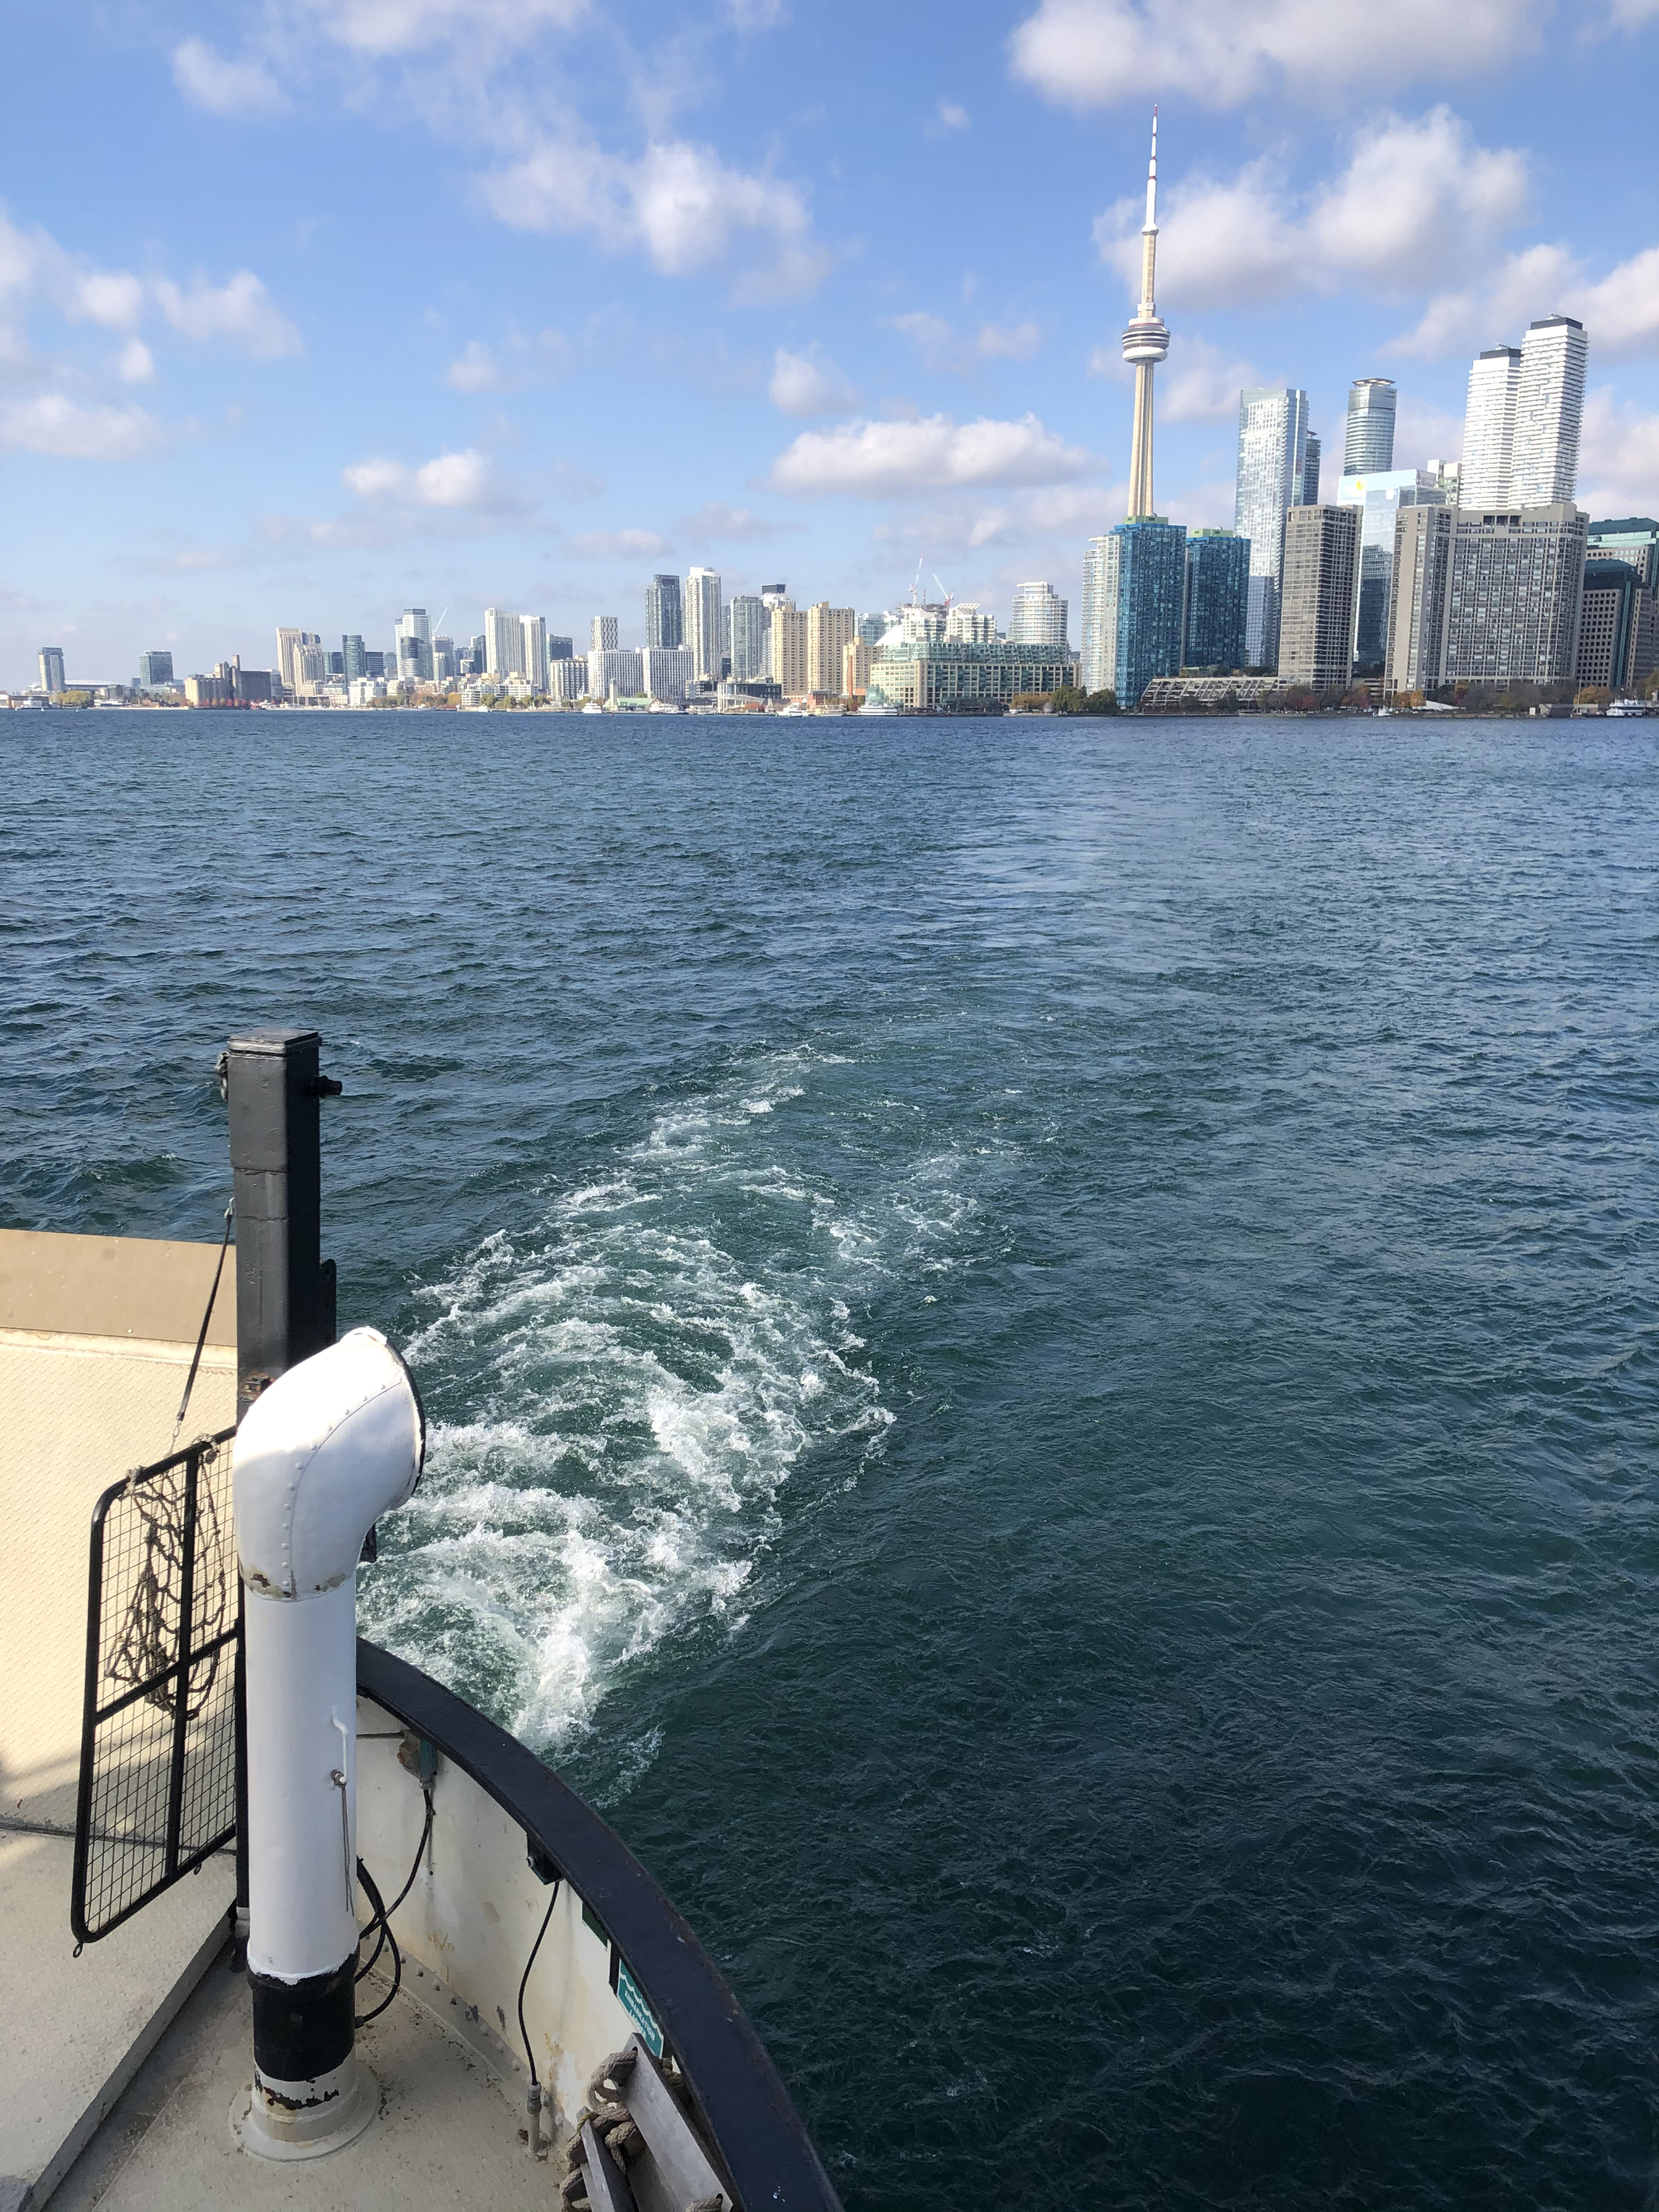 Vue maritime prise depuis le traversier des iles de Toronto.  Tour du CN et relief de la ville en arrière-plan.